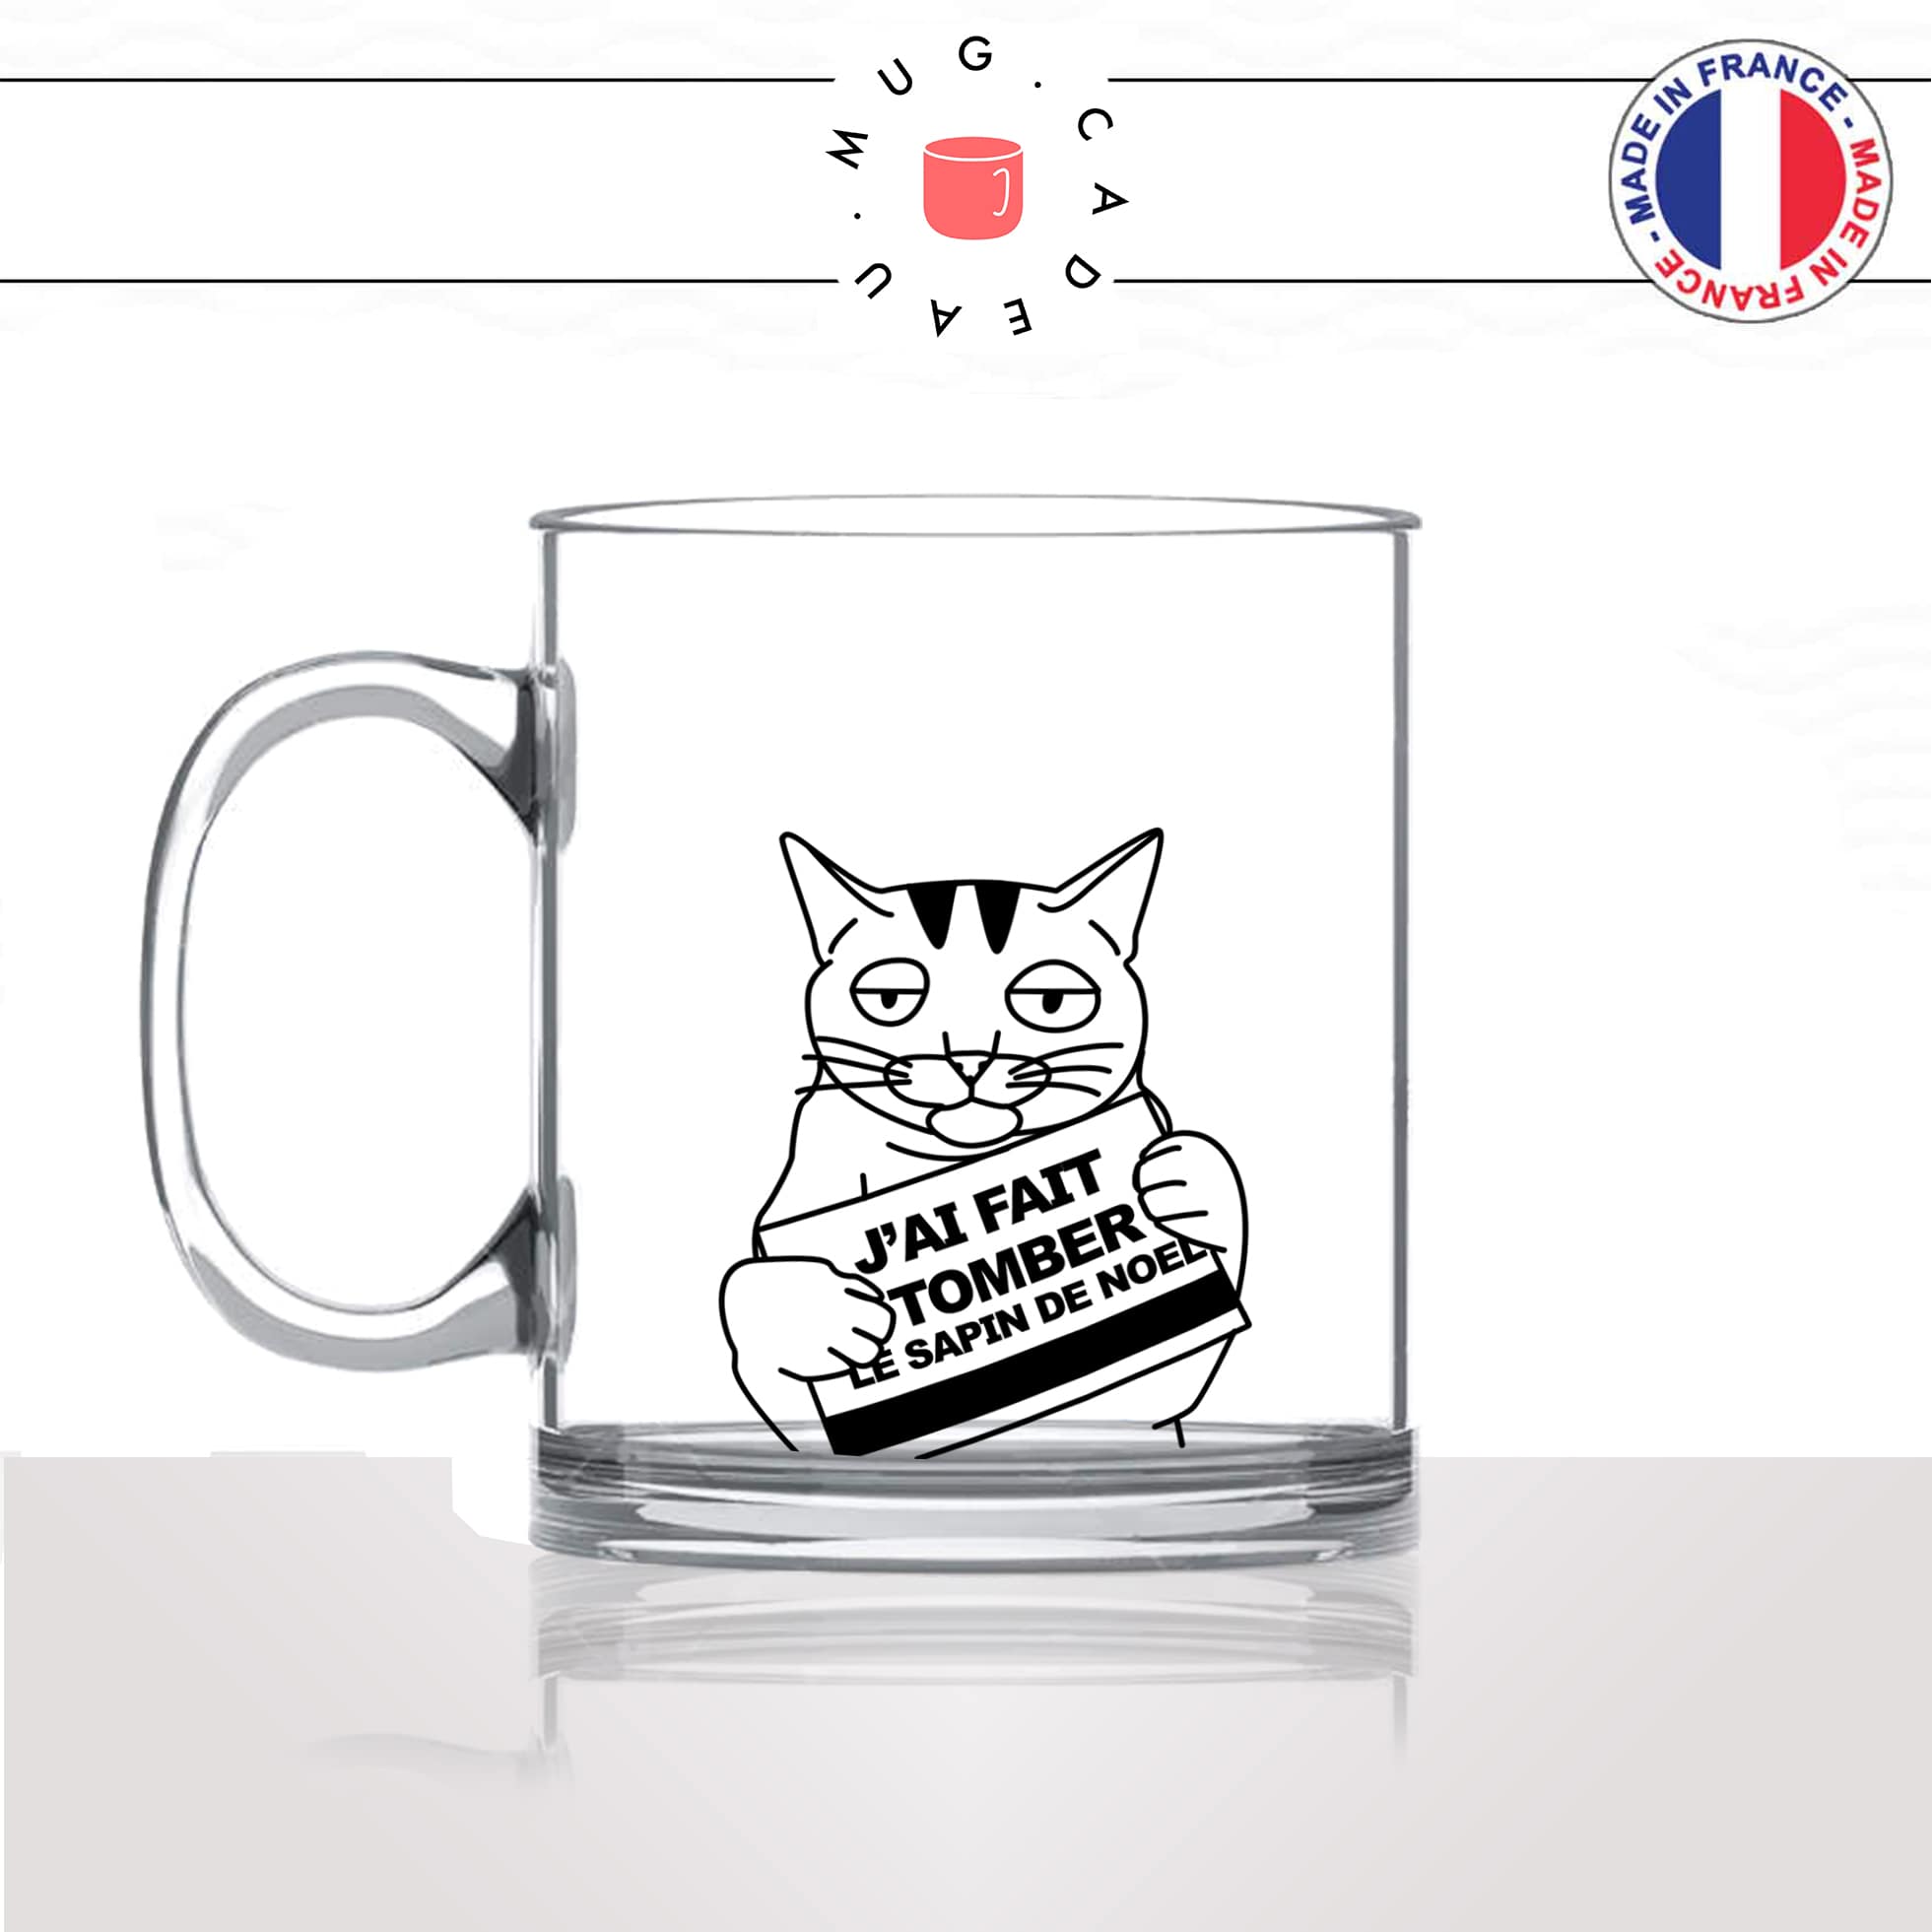 mug-tasse-en-verre-transparent-sapin-de-noel-christmas-tree-chats-mignon-animal-chaton-dessin-noir-fun-café-thé-idée-cadeau-original-personnalisée-min